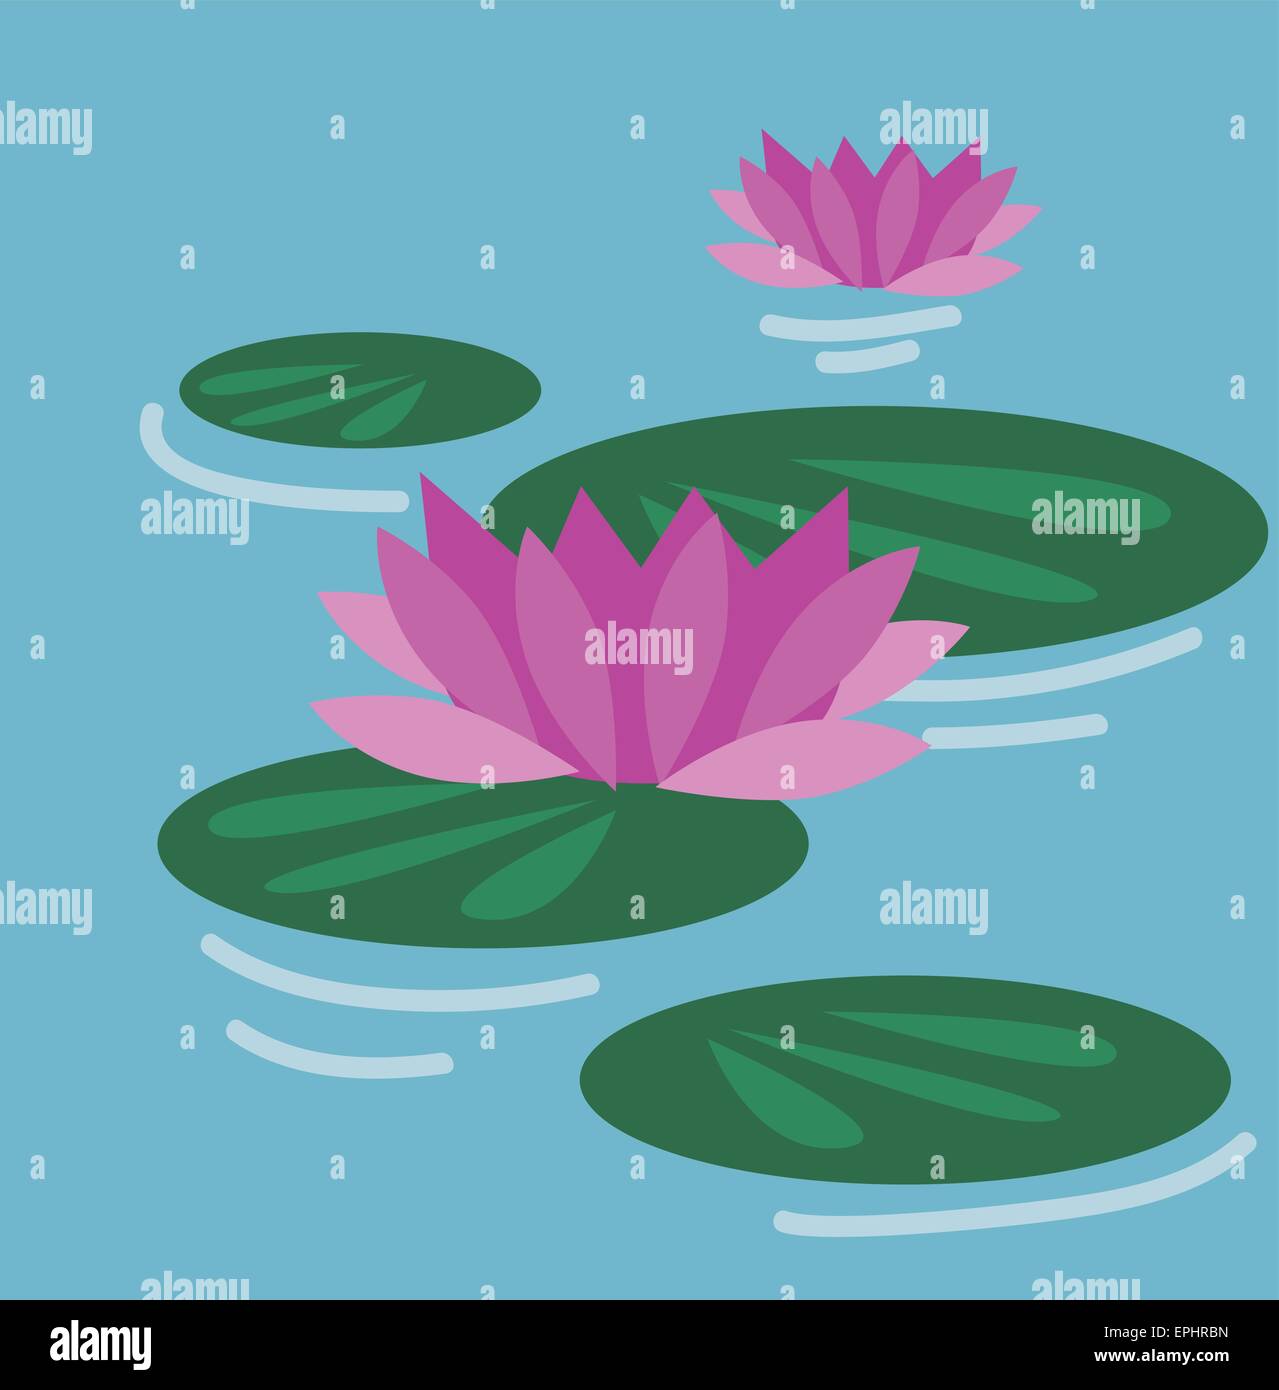 Illustrazione Vettoriale di ninfee con fiori di colore rosa, sopra l'acqua Illustrazione Vettoriale